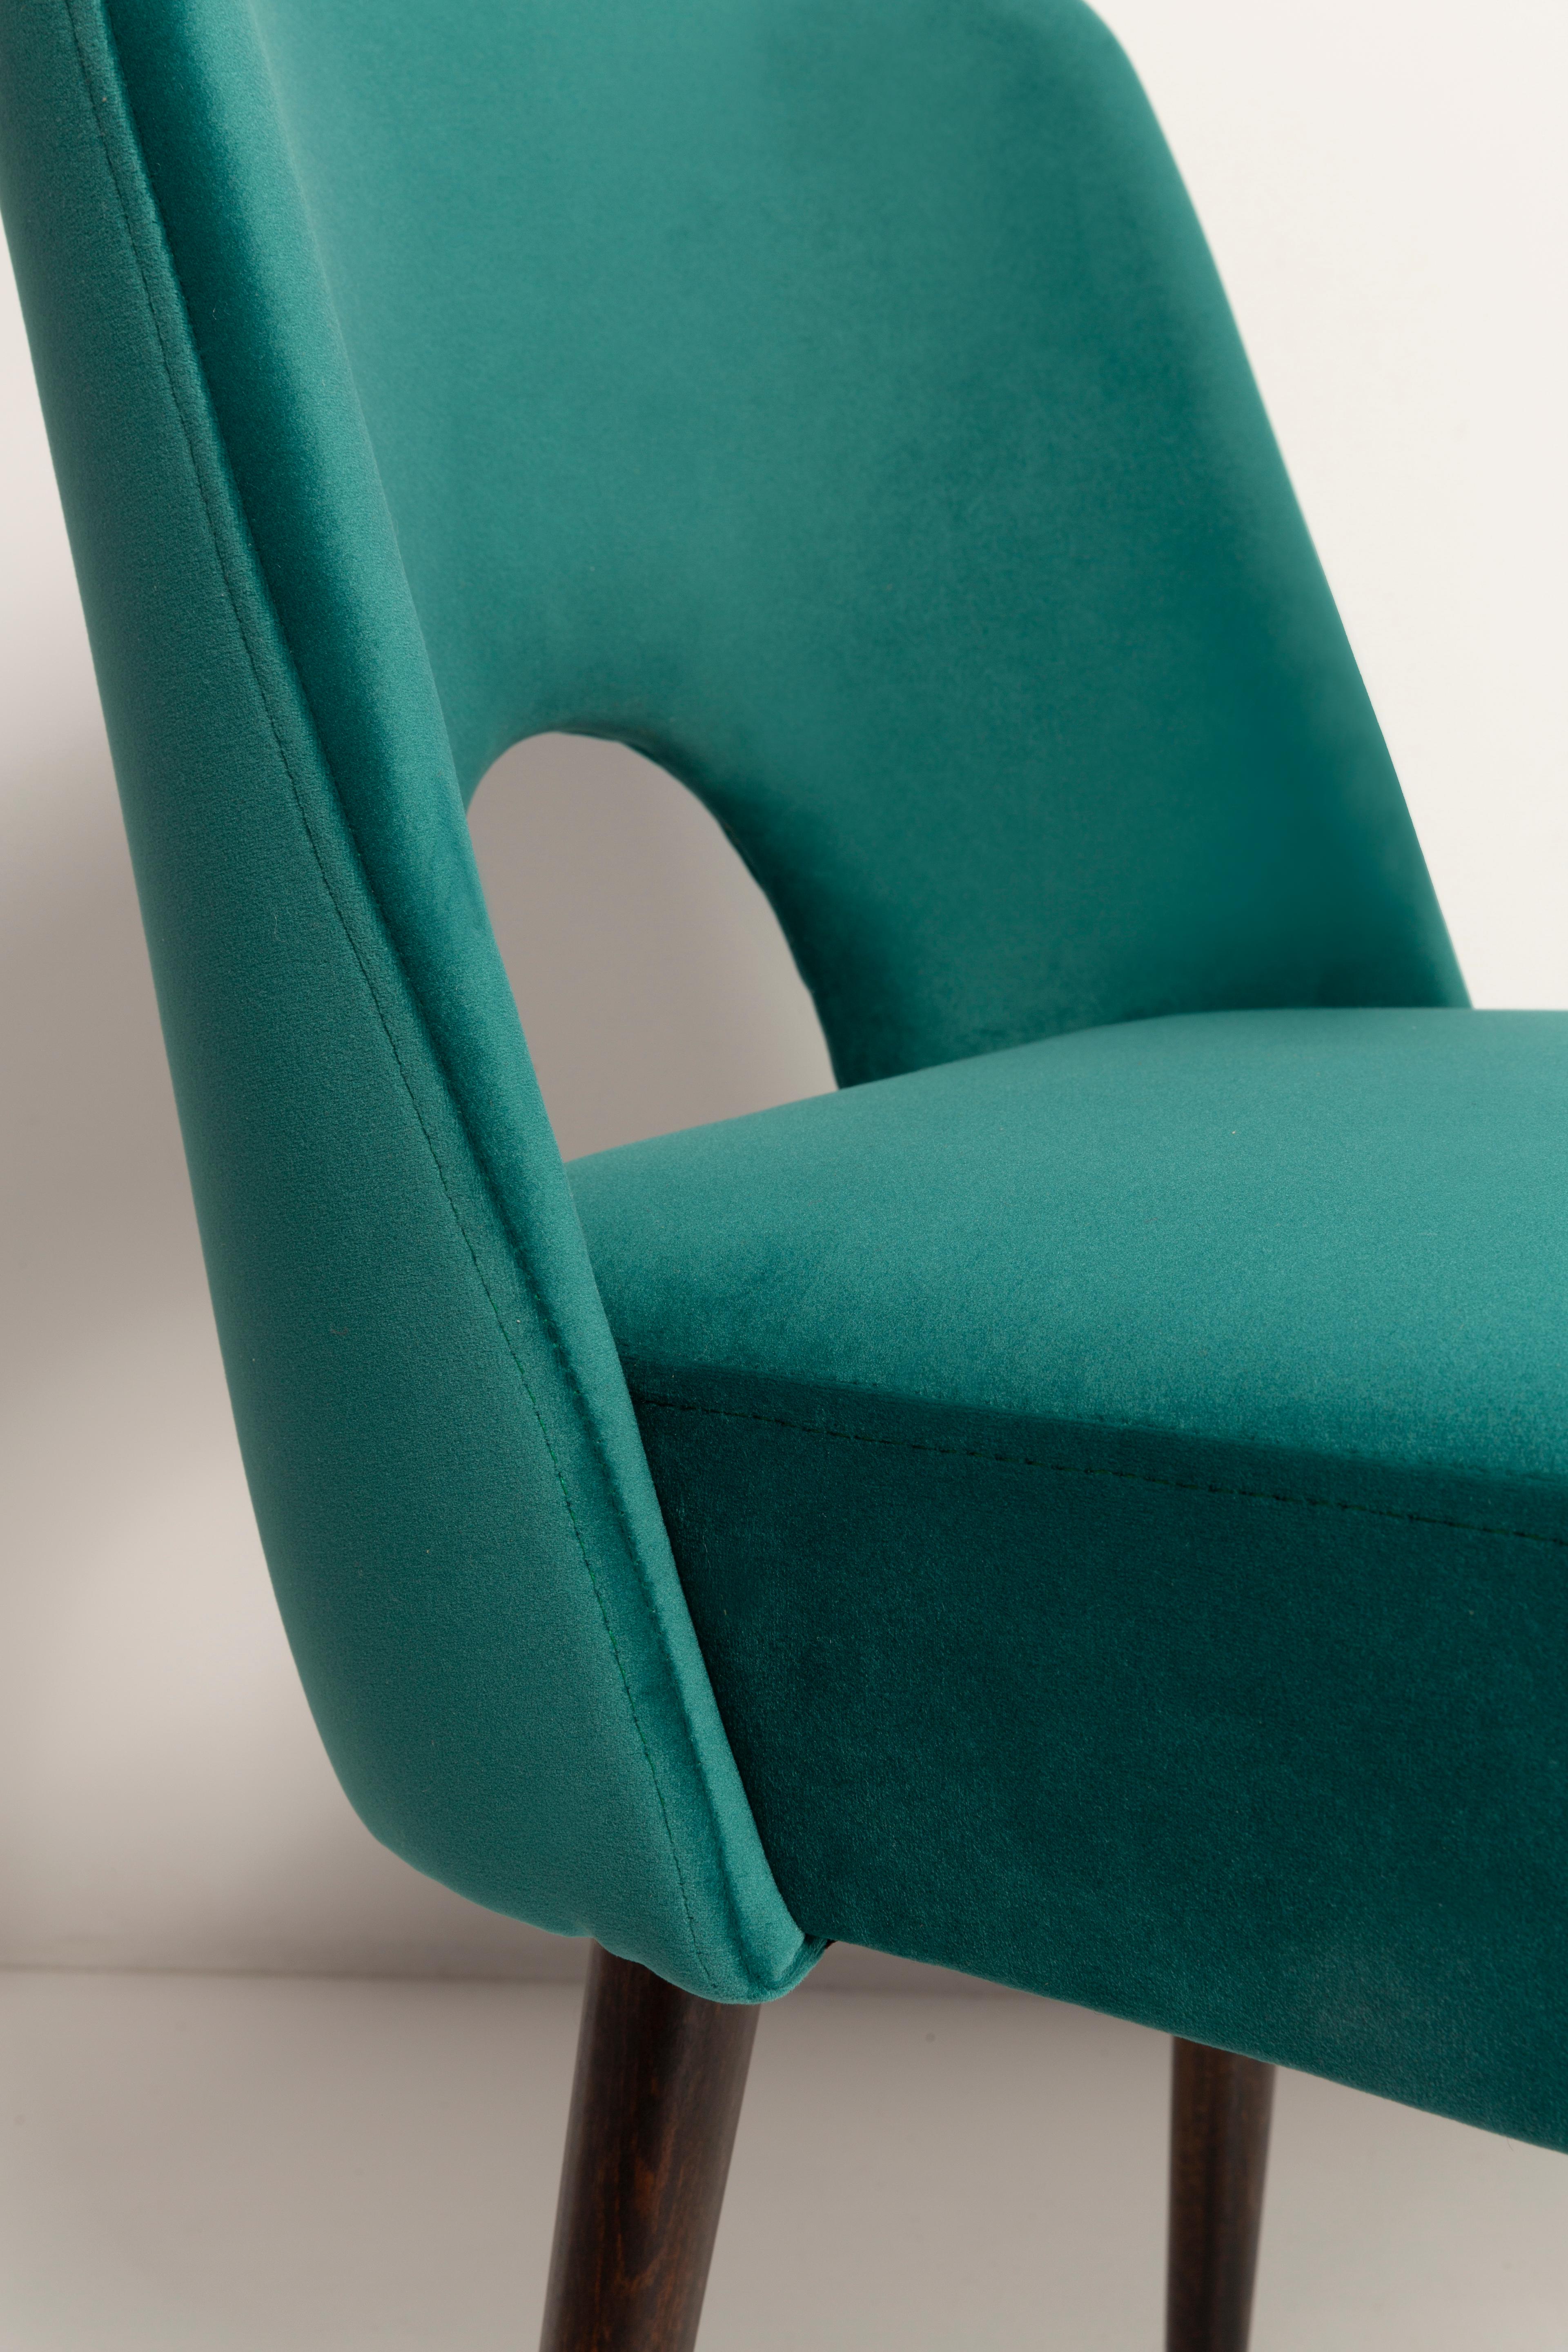 Set of Nine Dark Green Velvet 'Shell' Chairs, Europe, 1960s For Sale 5